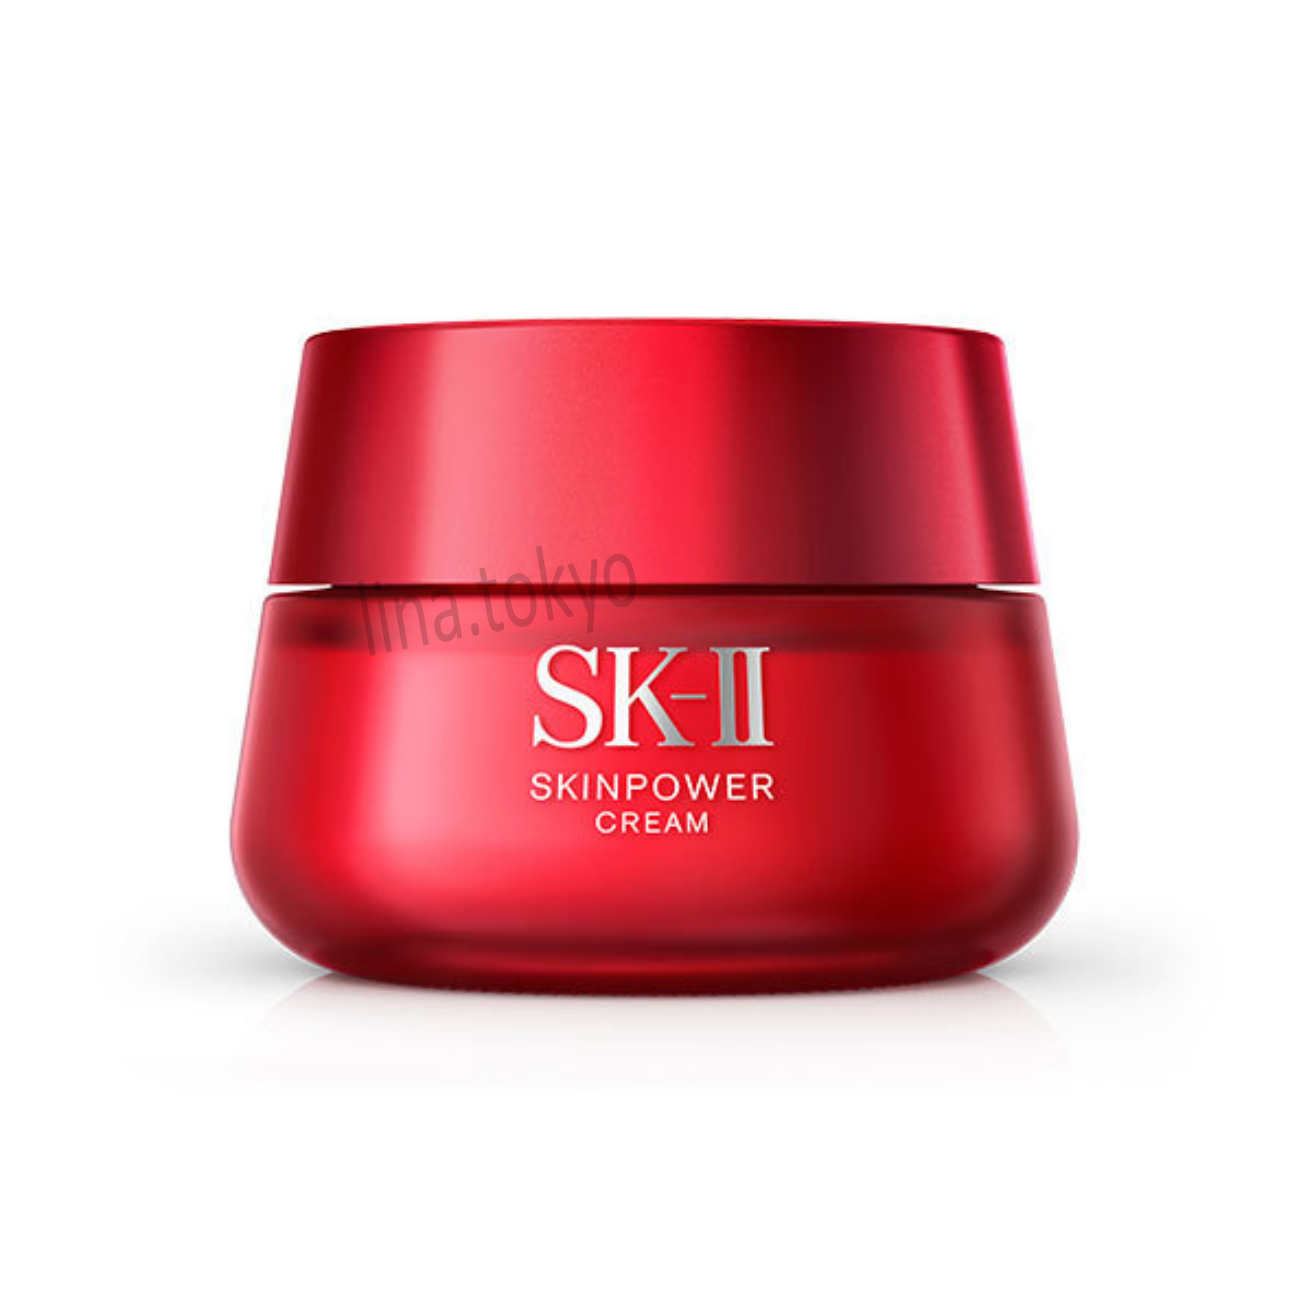 Kem dưỡng chống lão hóa da nhật bản SKII Skin Power Cream 50g dưỡng da săn chắc, mịn màng, trẻ trung, ngăn ngừa lão hóa da (SK1008) (Made in Japan) (Miễn phí giao hàng)